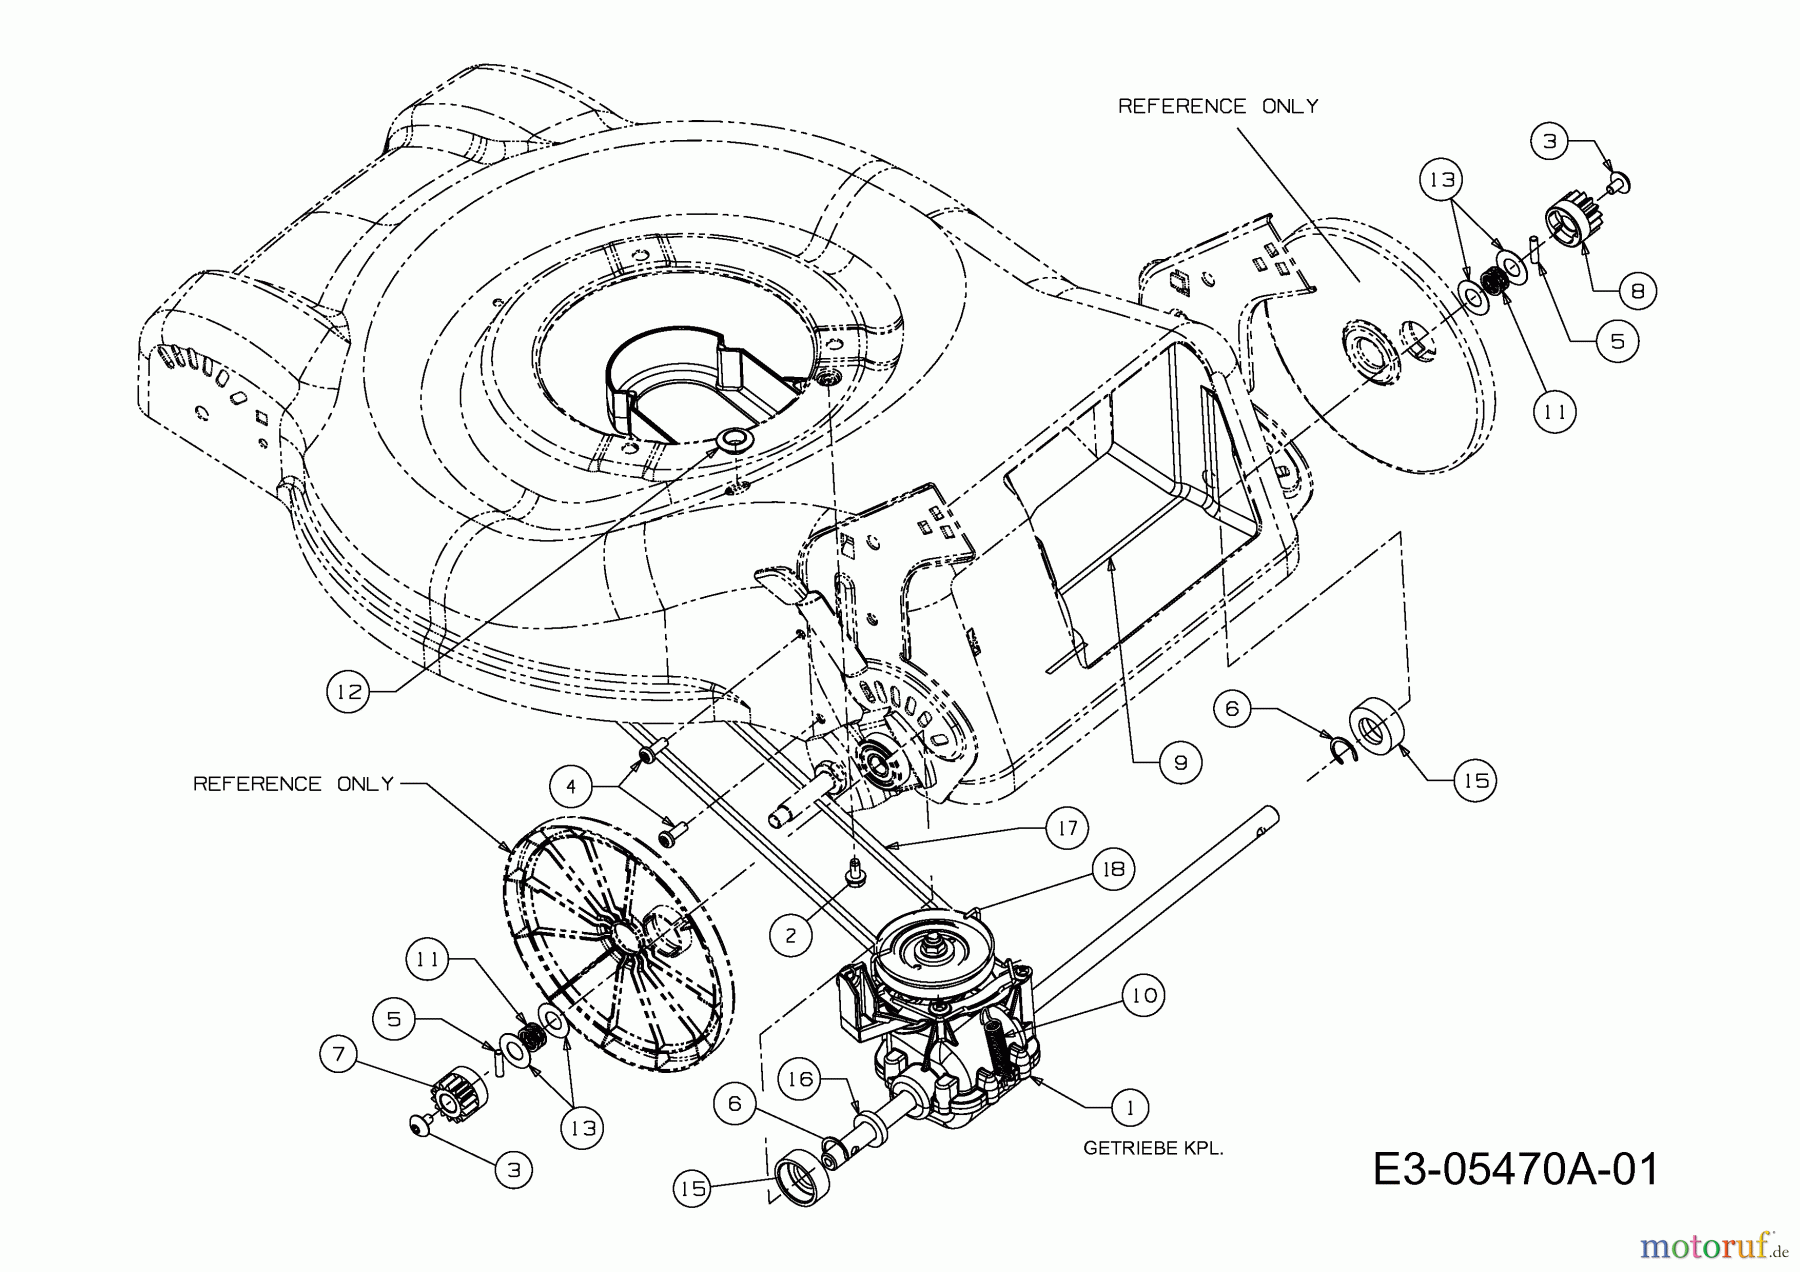  Gartenland Motormäher mit Antrieb 511.GLS 46 A 12D-J2JD640  (2010) Getriebe